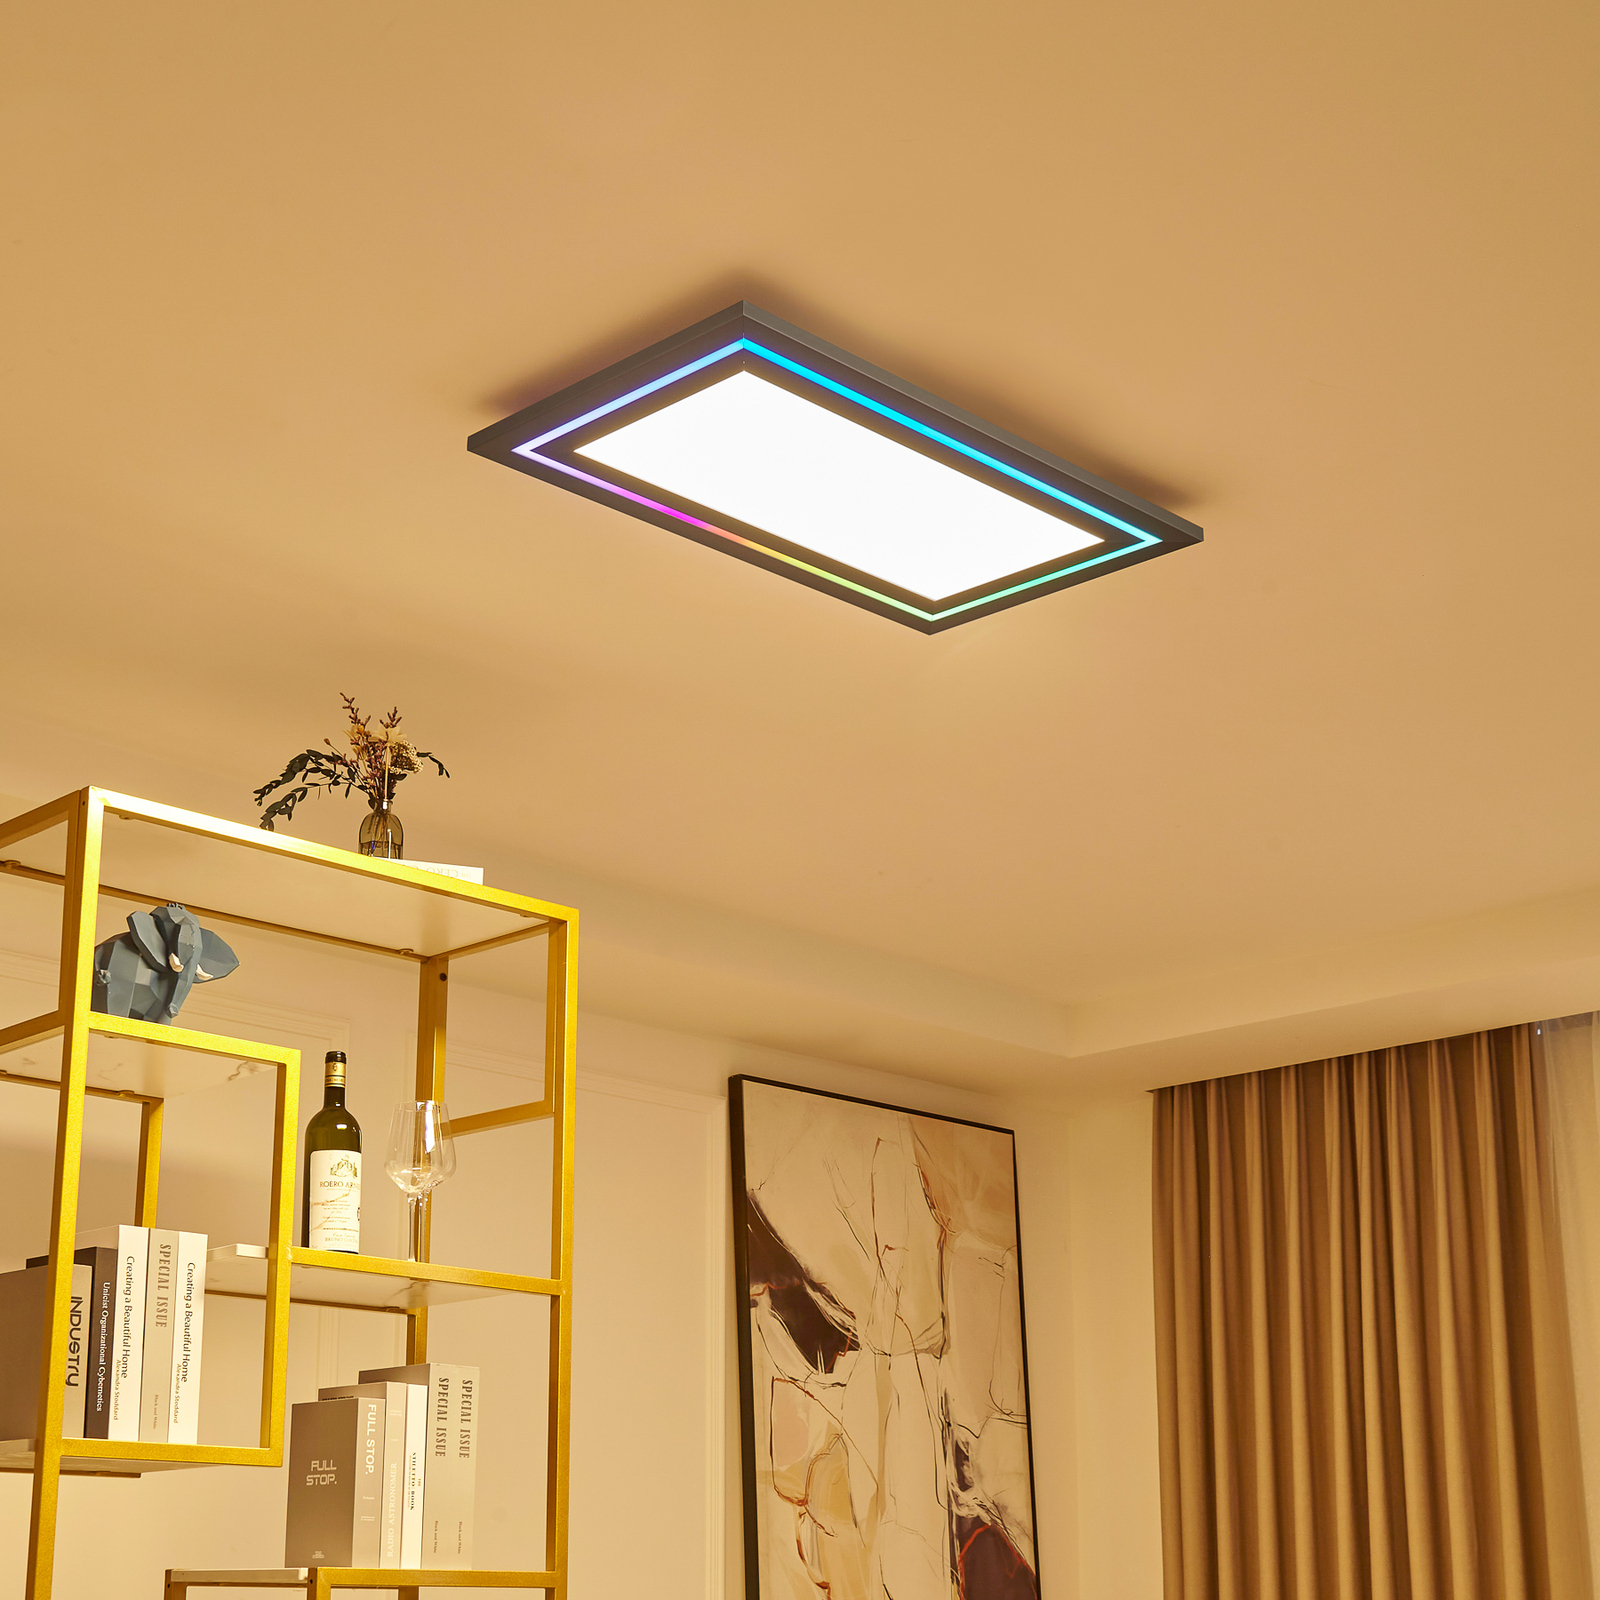 Lucande Leicy LED ceiling 80 cm RGB colour flow